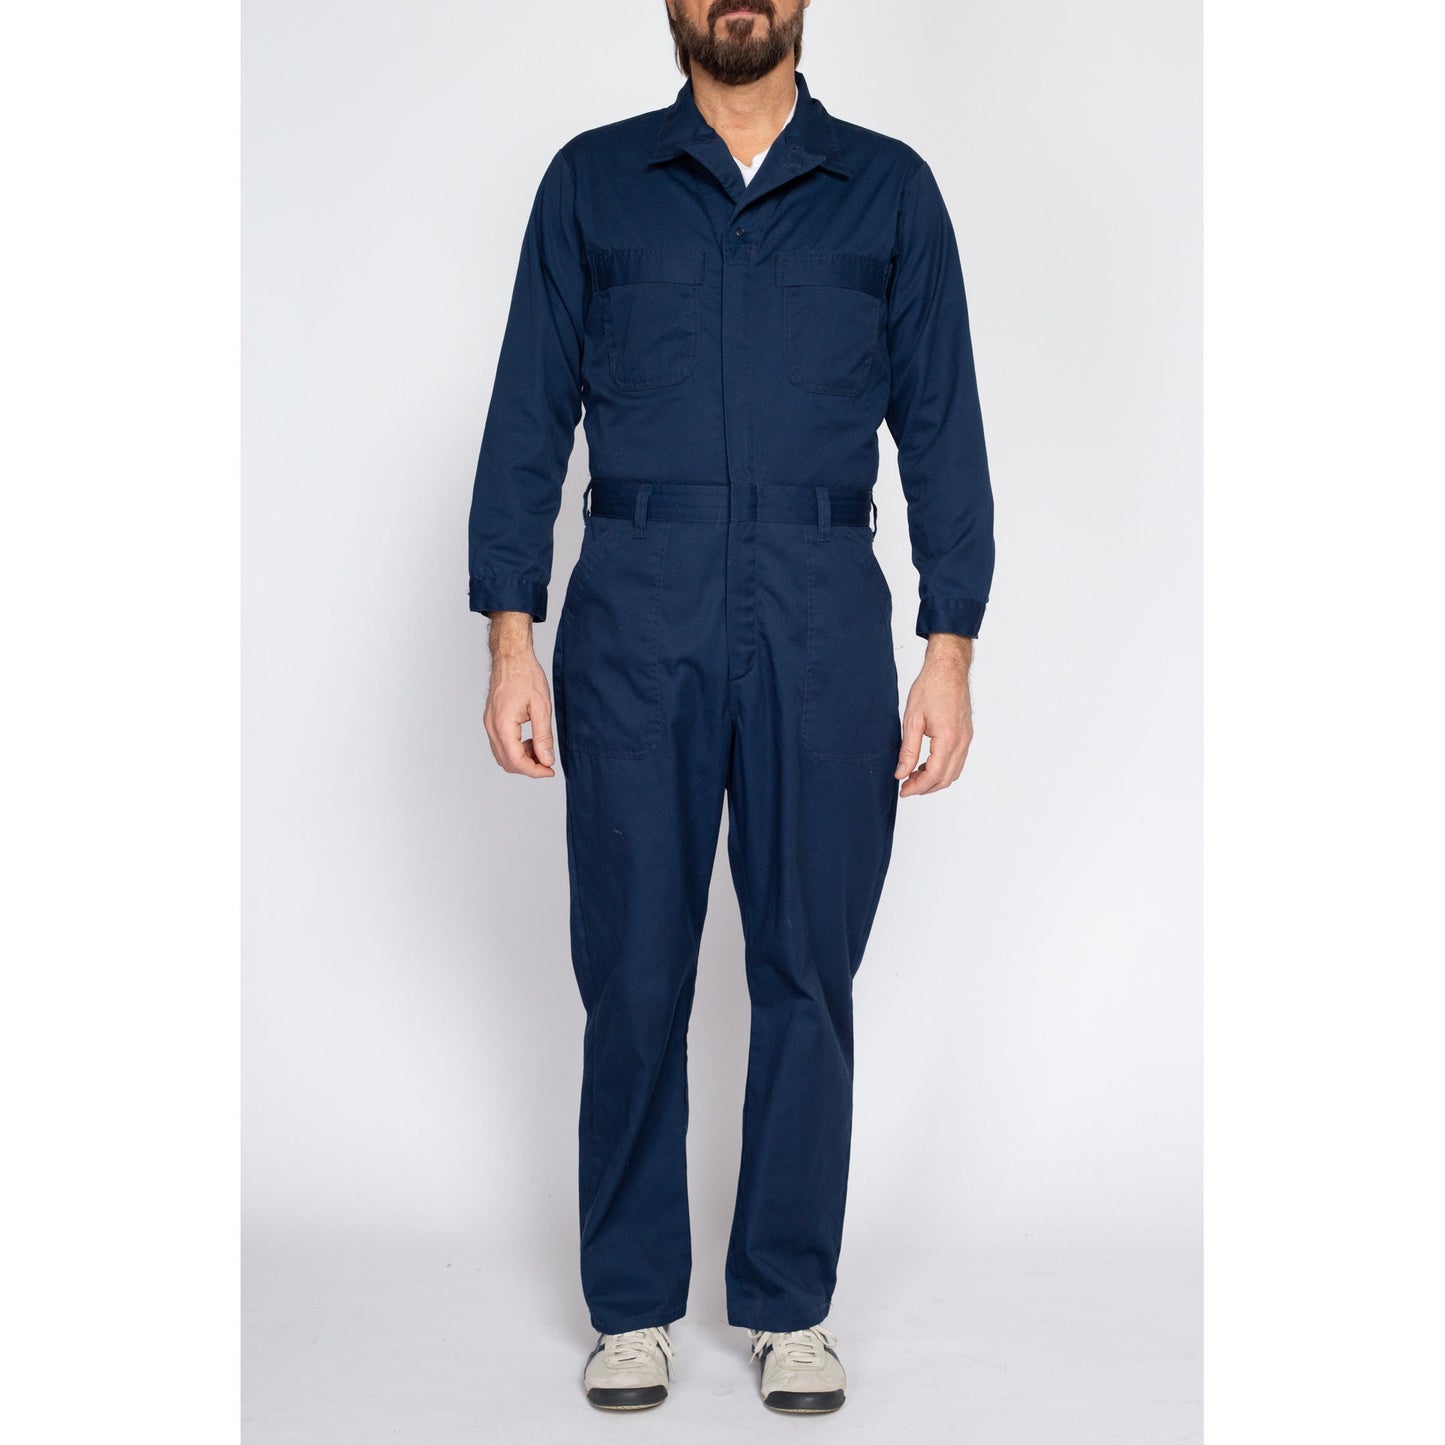 40R Vintage Navy Blue Workwear Coveralls Medium | 90s Y2K Men's Mechanics Boiler Suit Uniform Jumpsuit